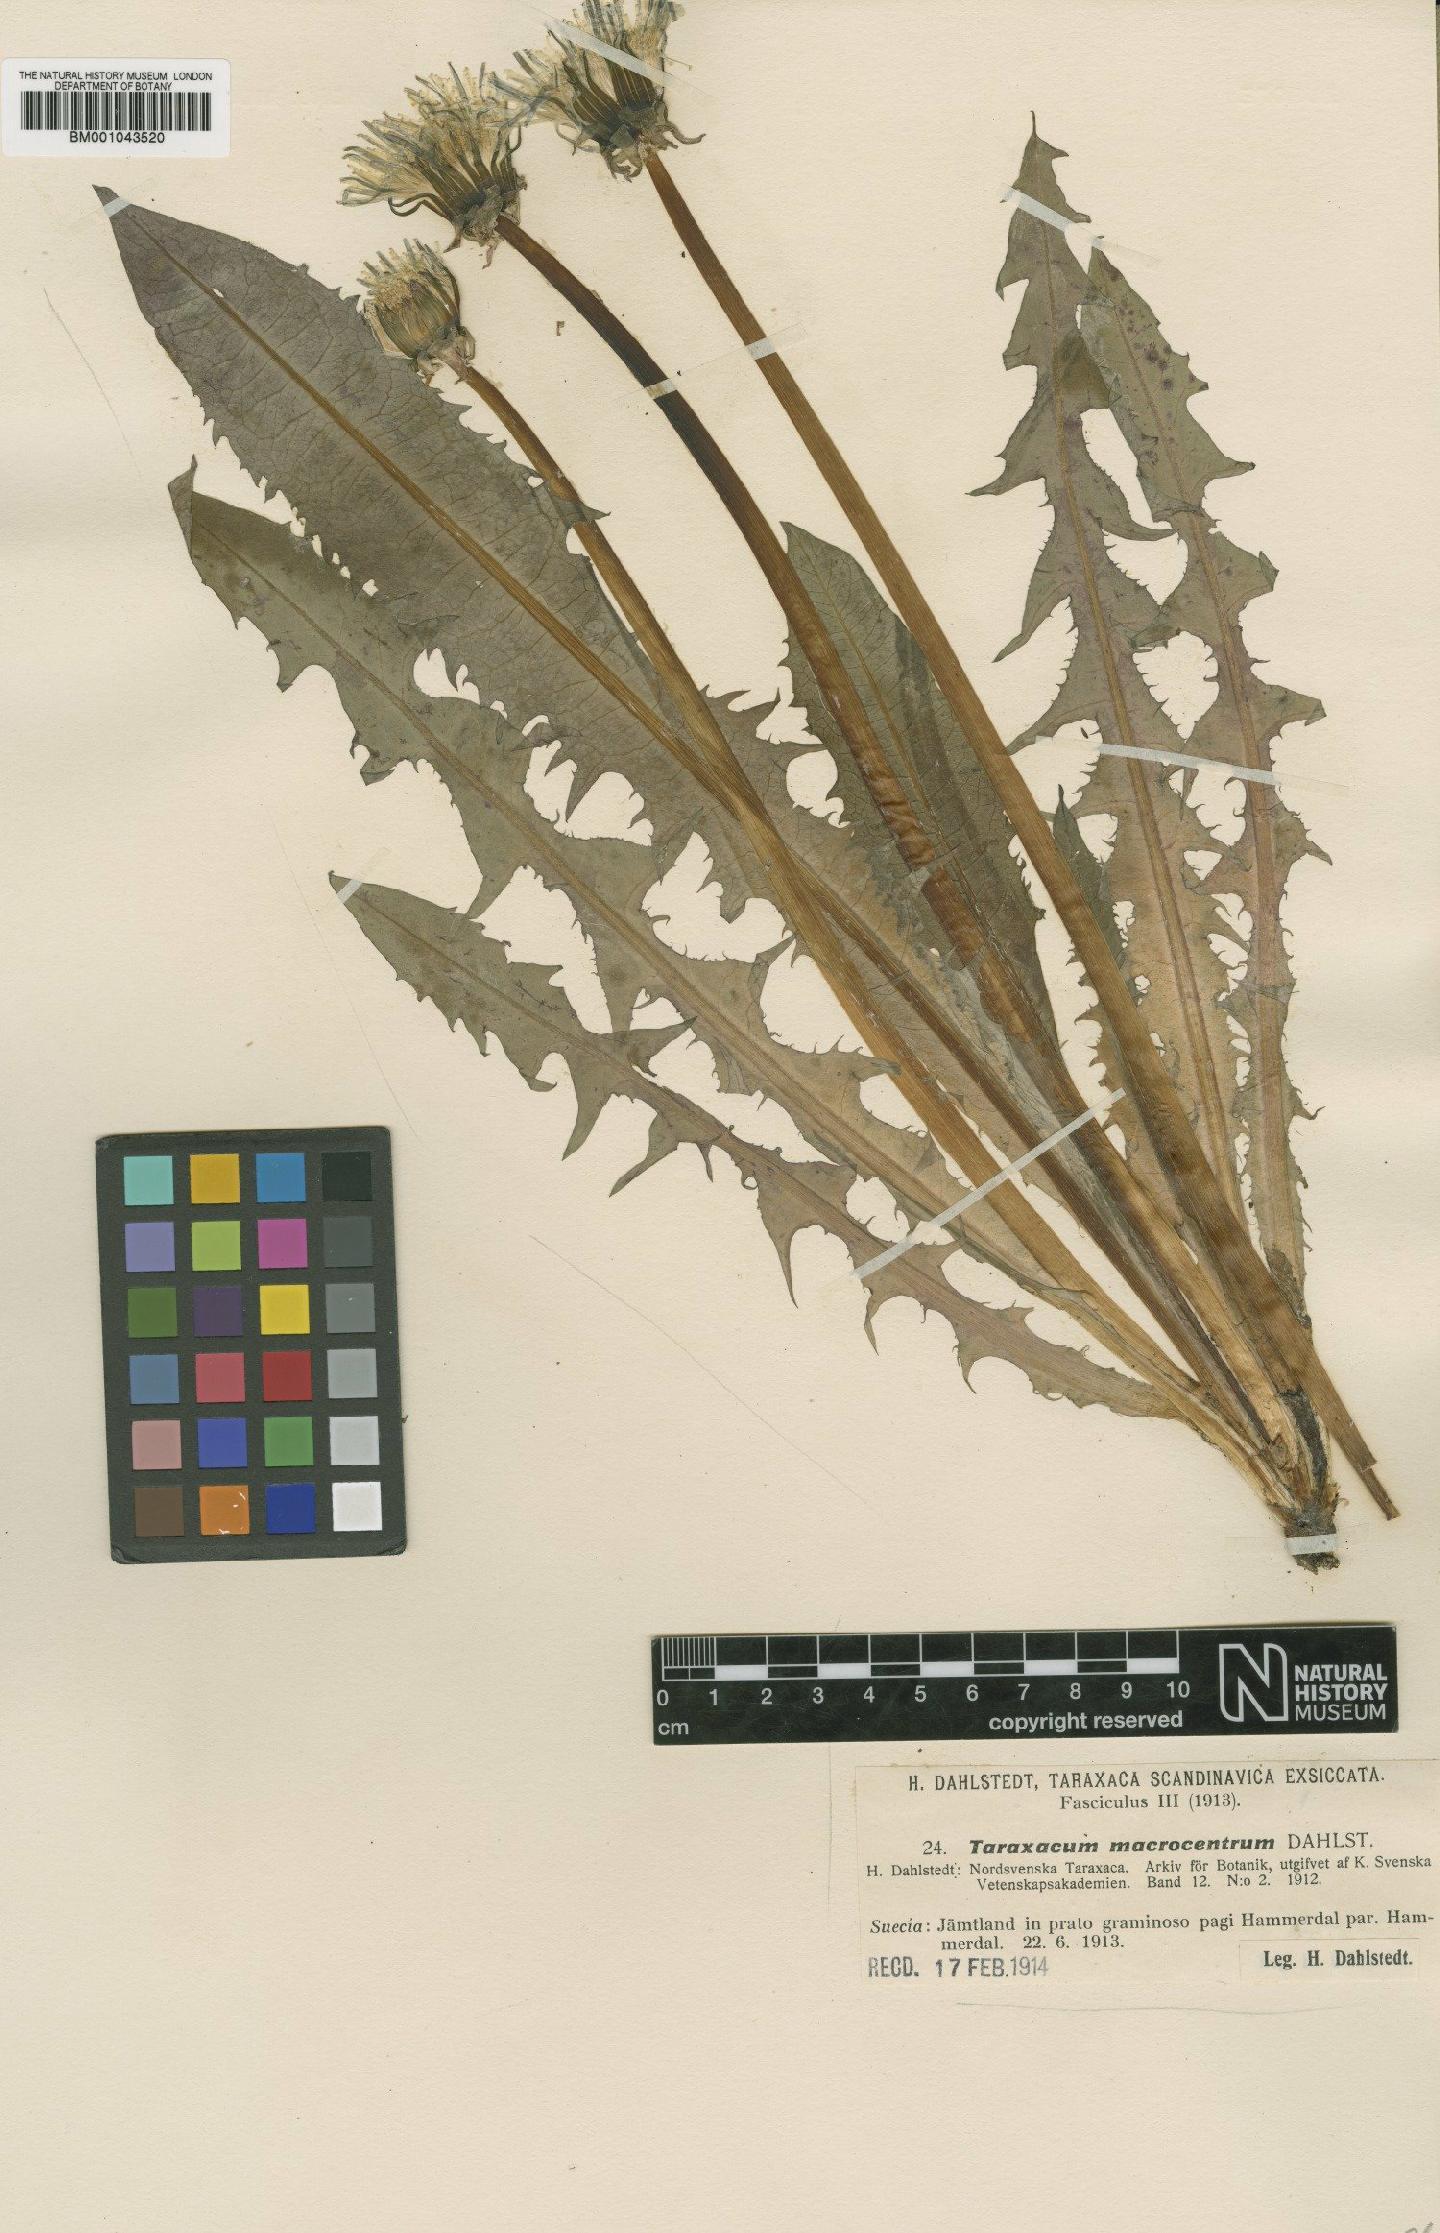 To NHMUK collection (Taraxacum macrocentrum Dahlst.; Type; NHMUK:ecatalogue:1999302)